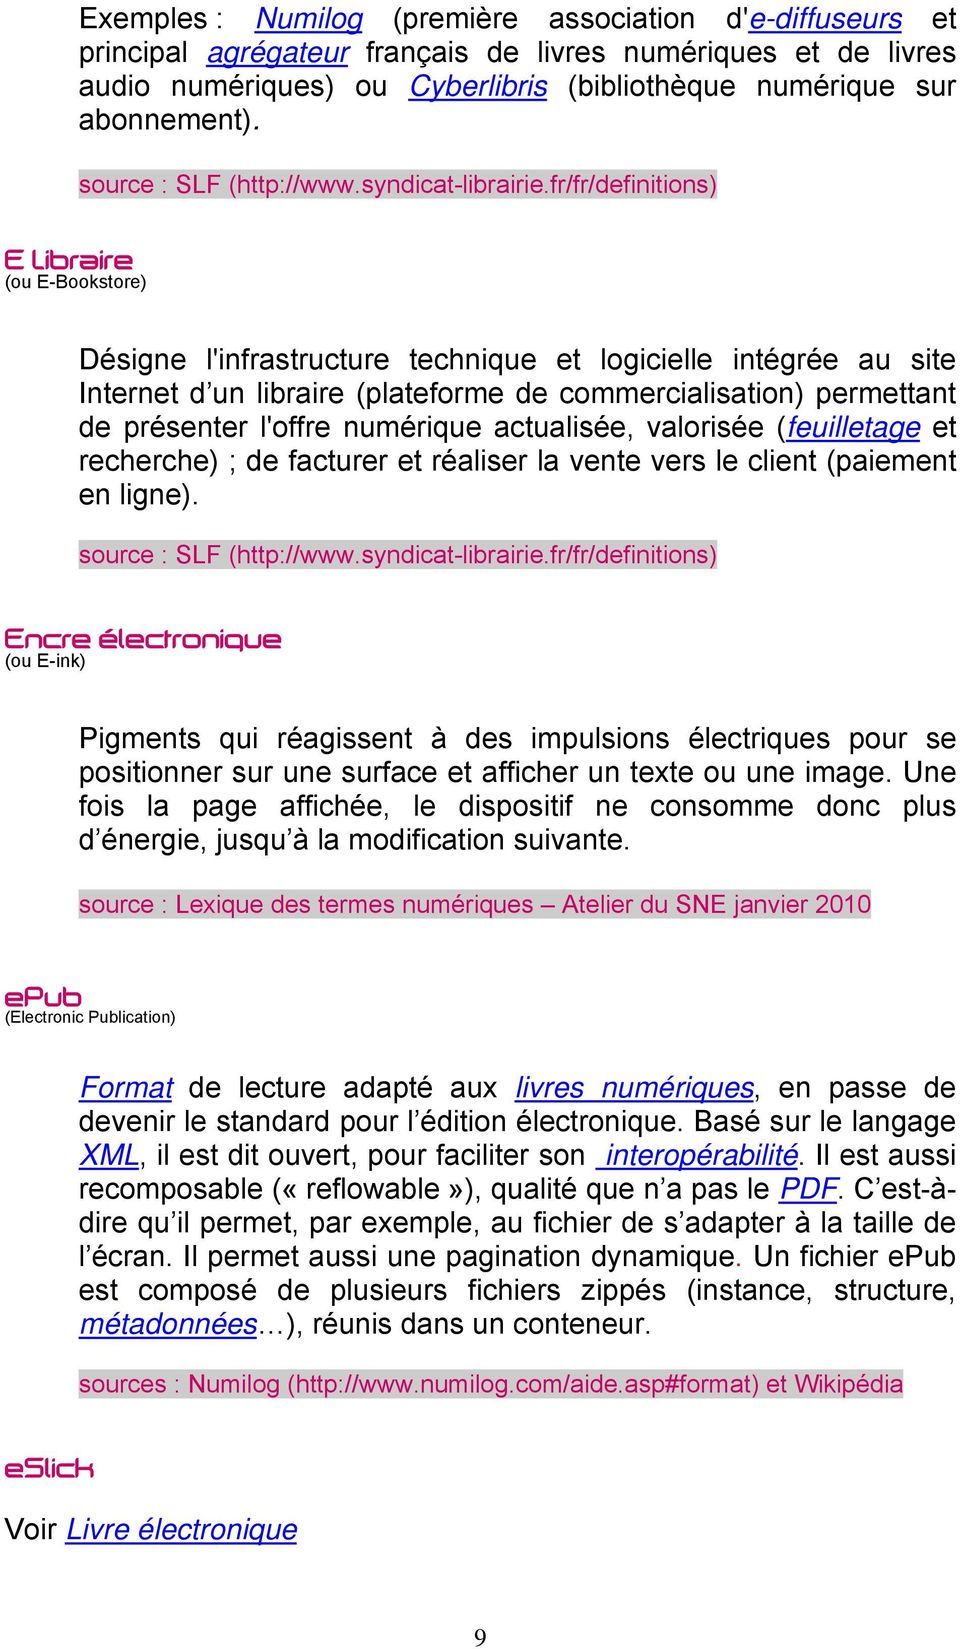 fr/fr/definitions) ELibraire (ou E-Bookstore) Désigne l'infrastructure technique et logicielle intégrée au site Internet d un libraire (plateforme de commercialisation) permettant de présenter